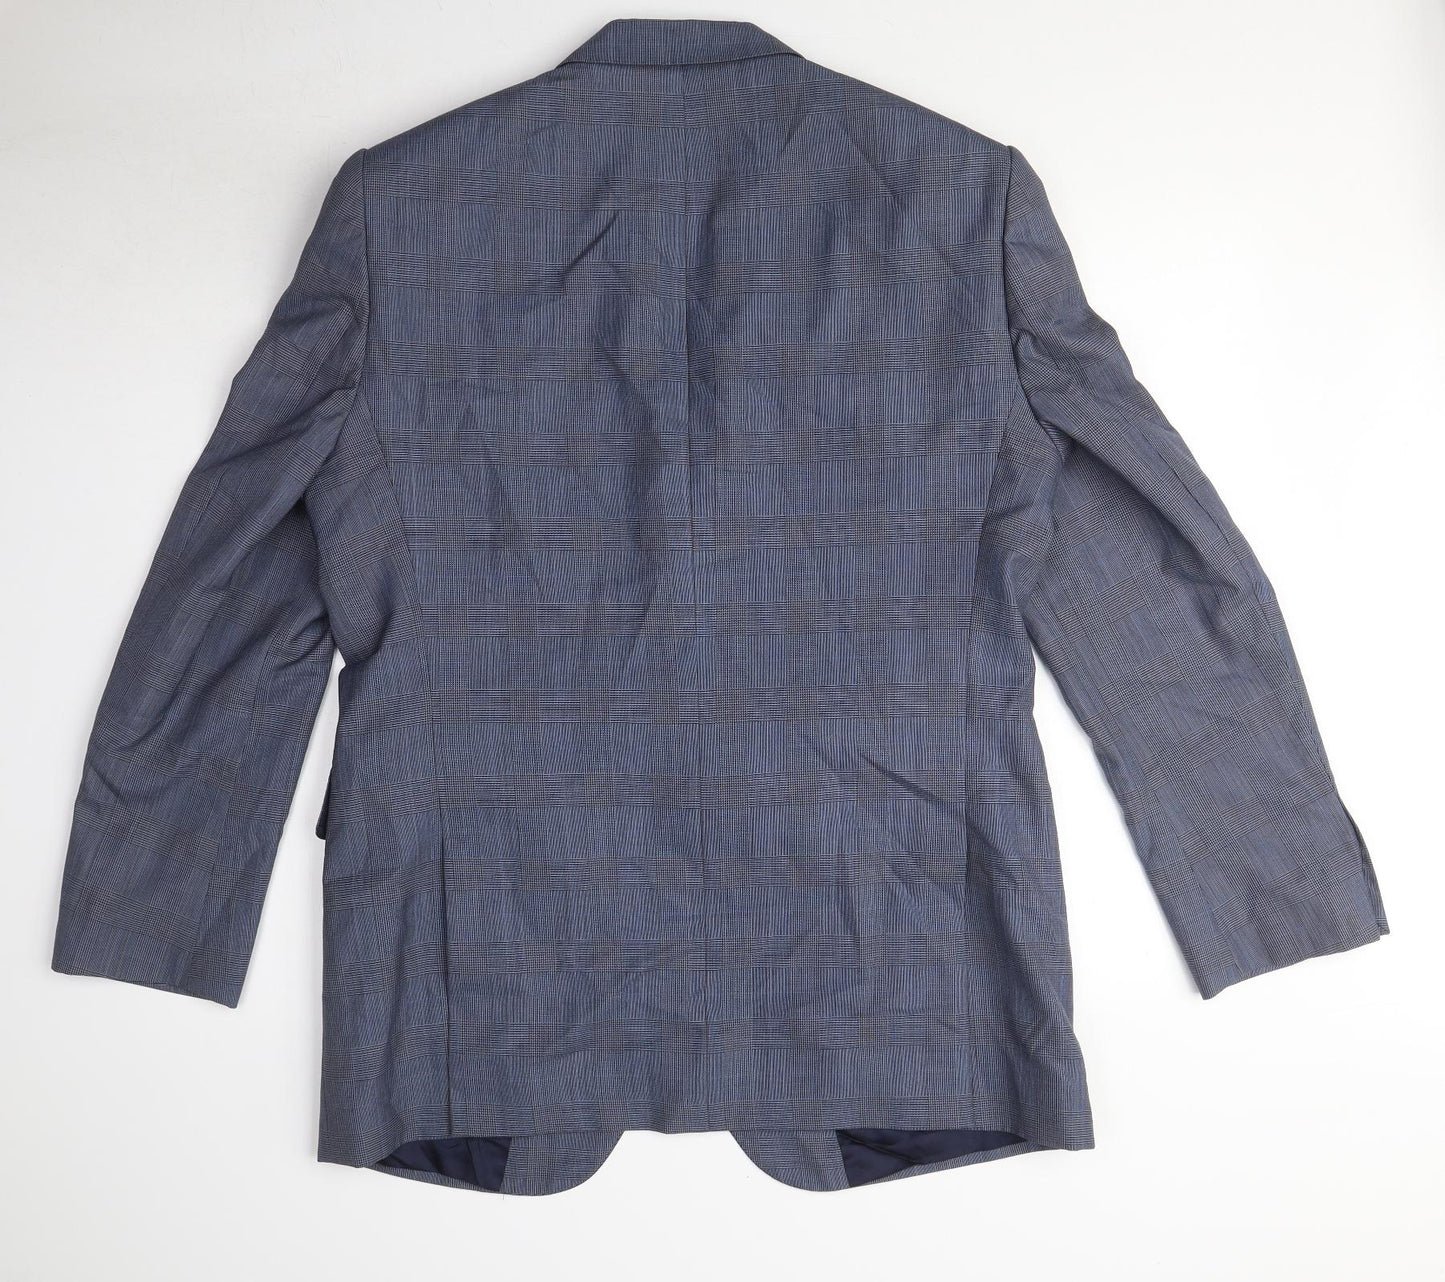 Jaeger Mens Blue Check Wool Jacket Suit Jacket Size 42 Regular